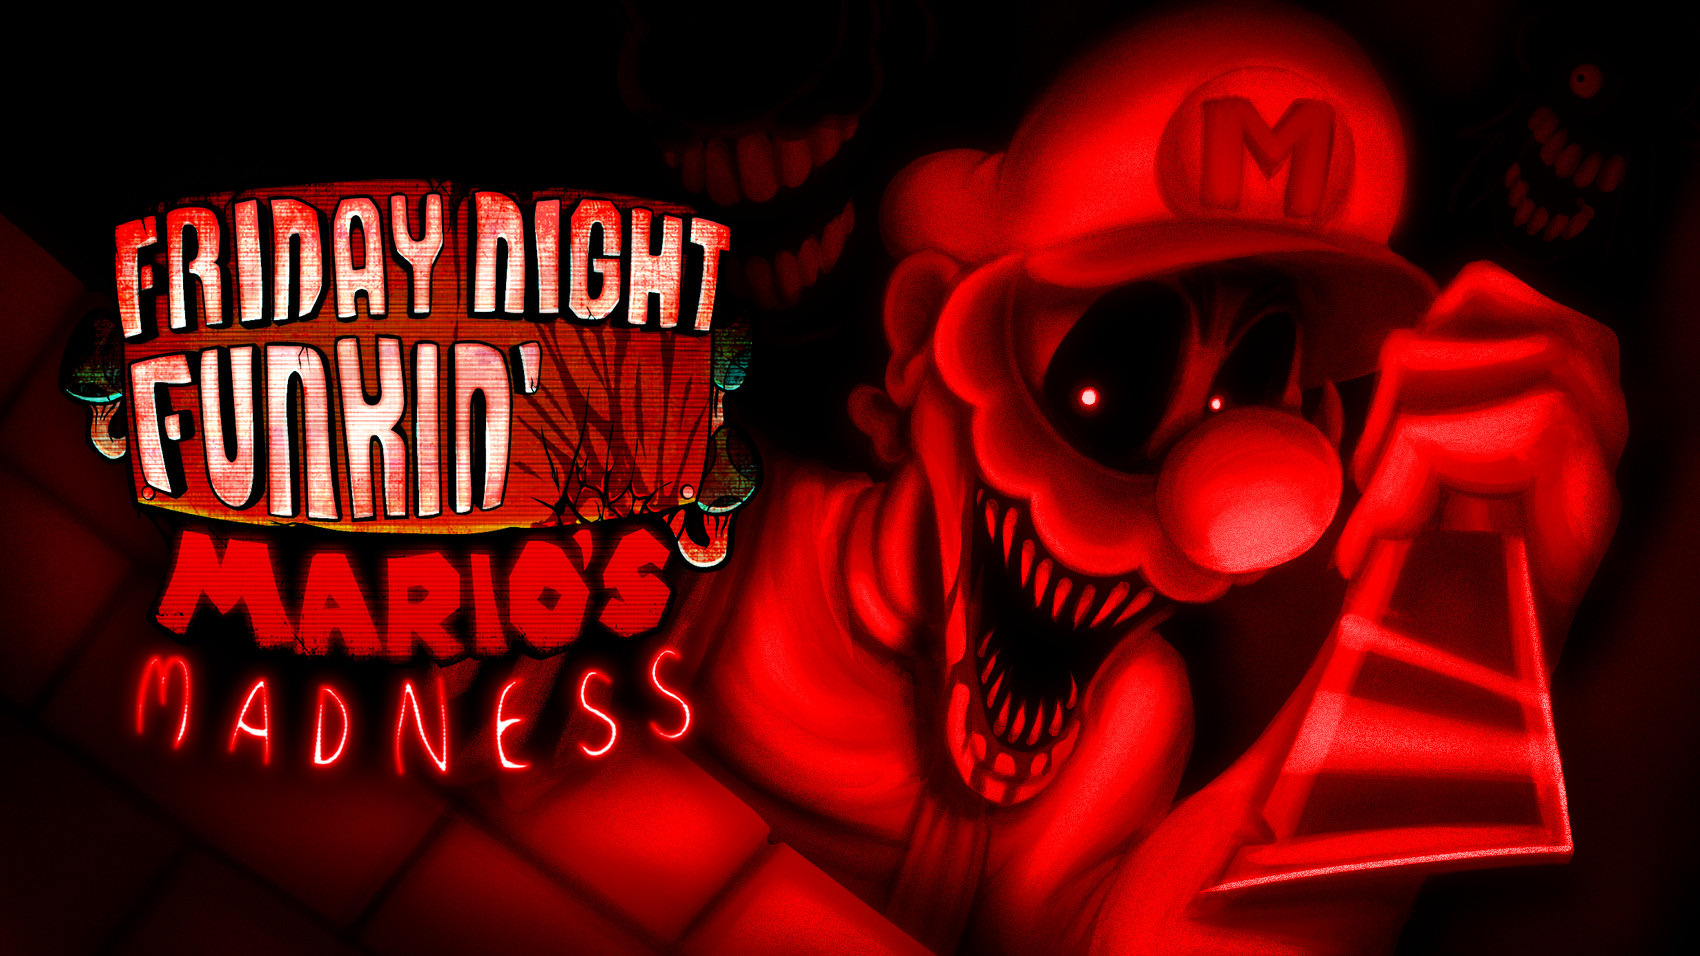 Vs mario madness. Mario Madness v2 параноя. Mario Madness v2 Paranoia gf. Mario Madness v2 Android Port. Friday Night Funkin с Марио Метнес v2.